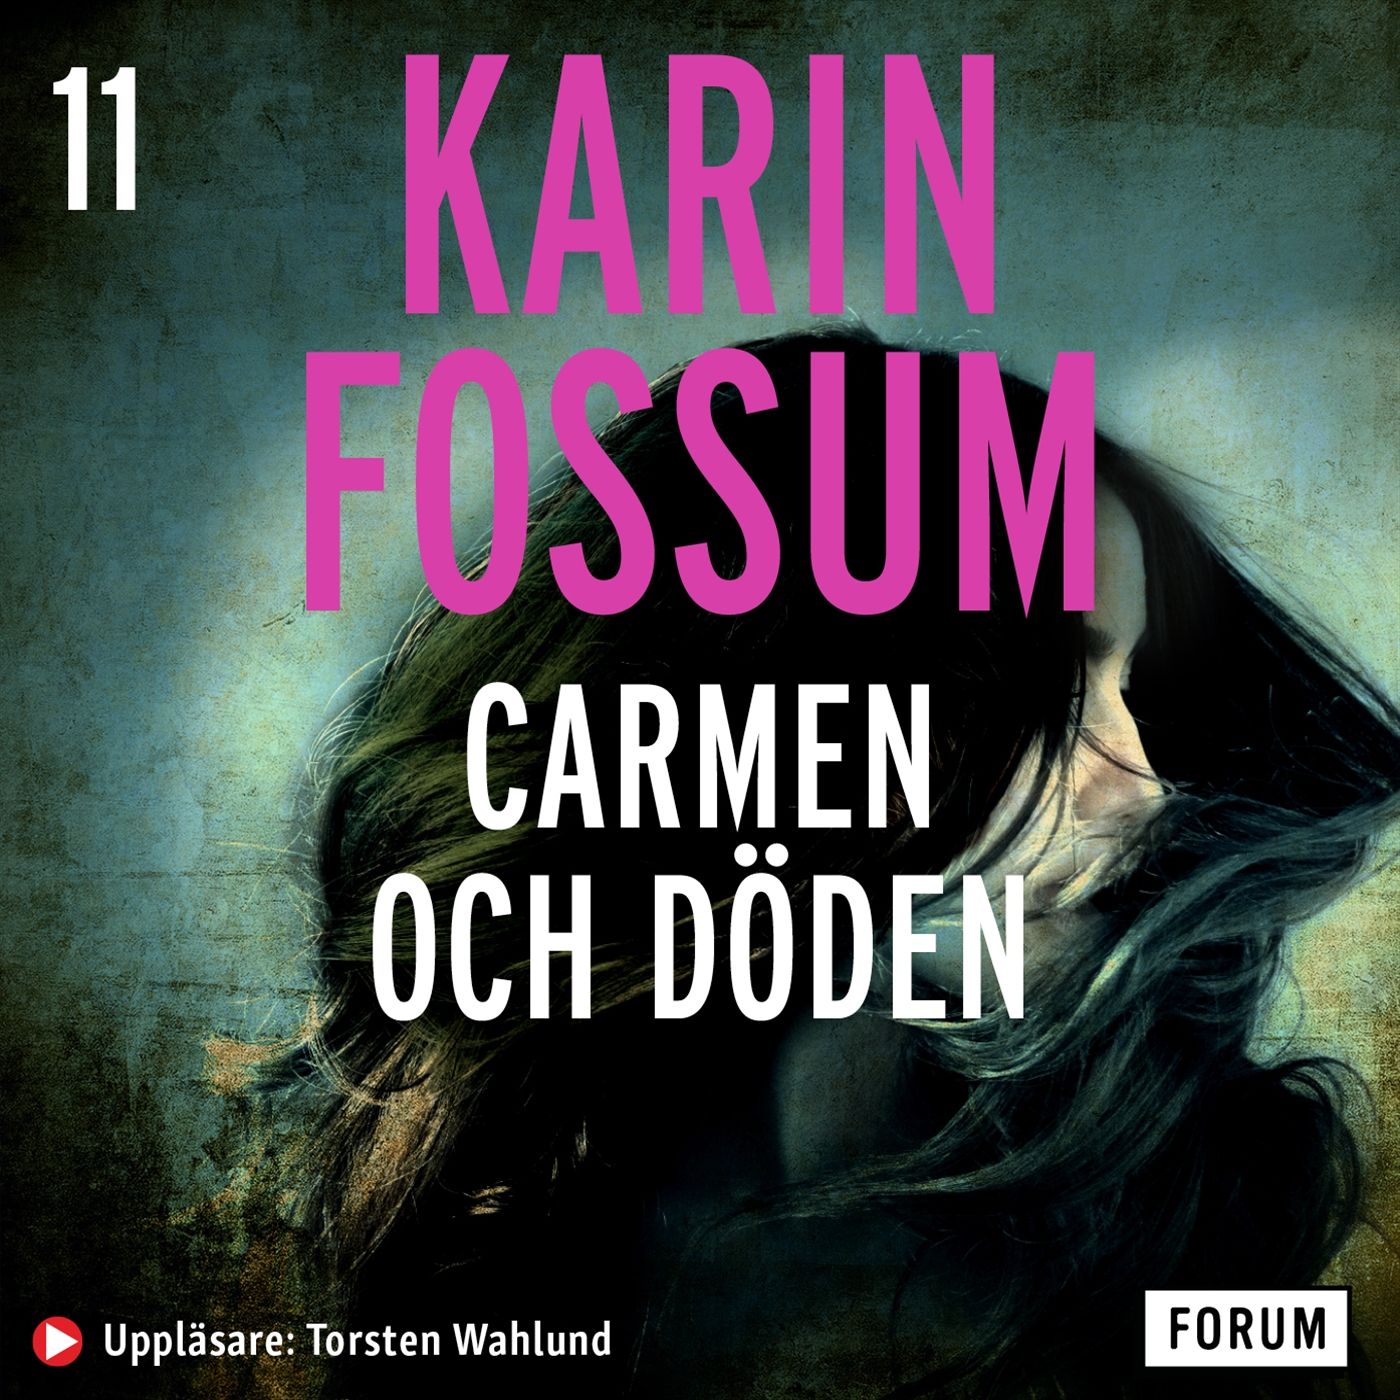 Carmen och döden, ljudbok av Karin Fossum